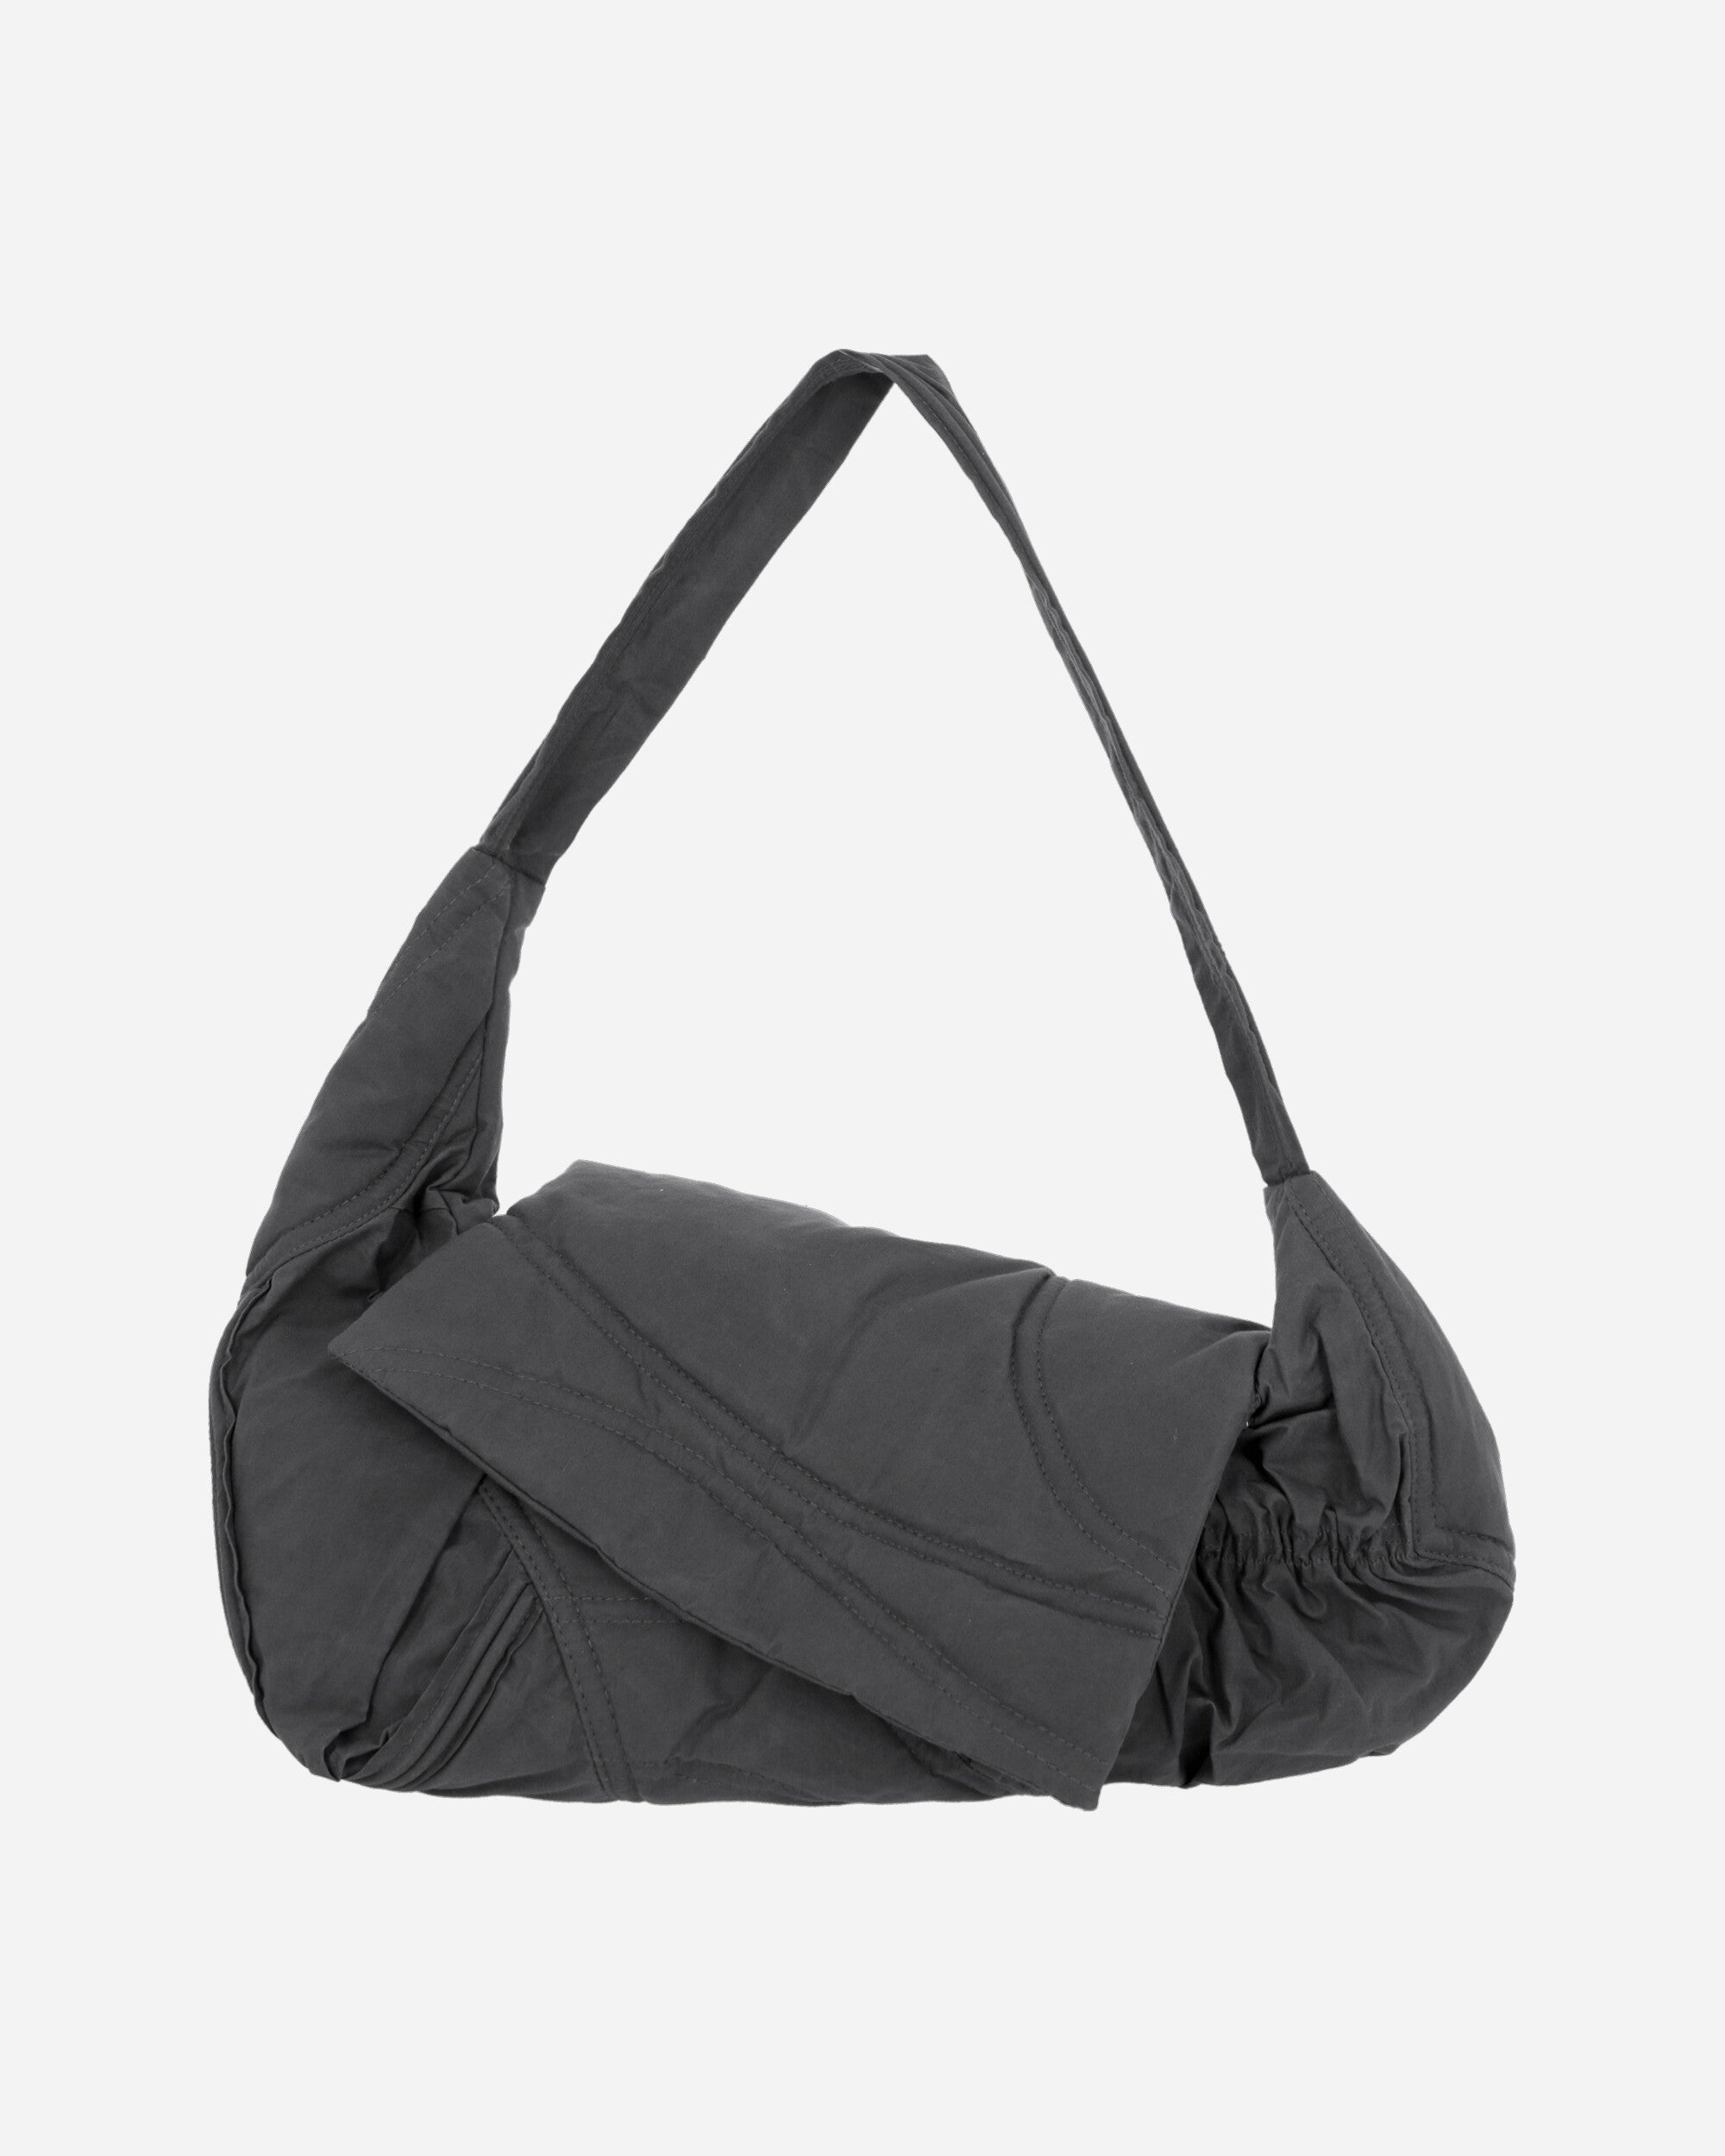 Pillow Bag Grey